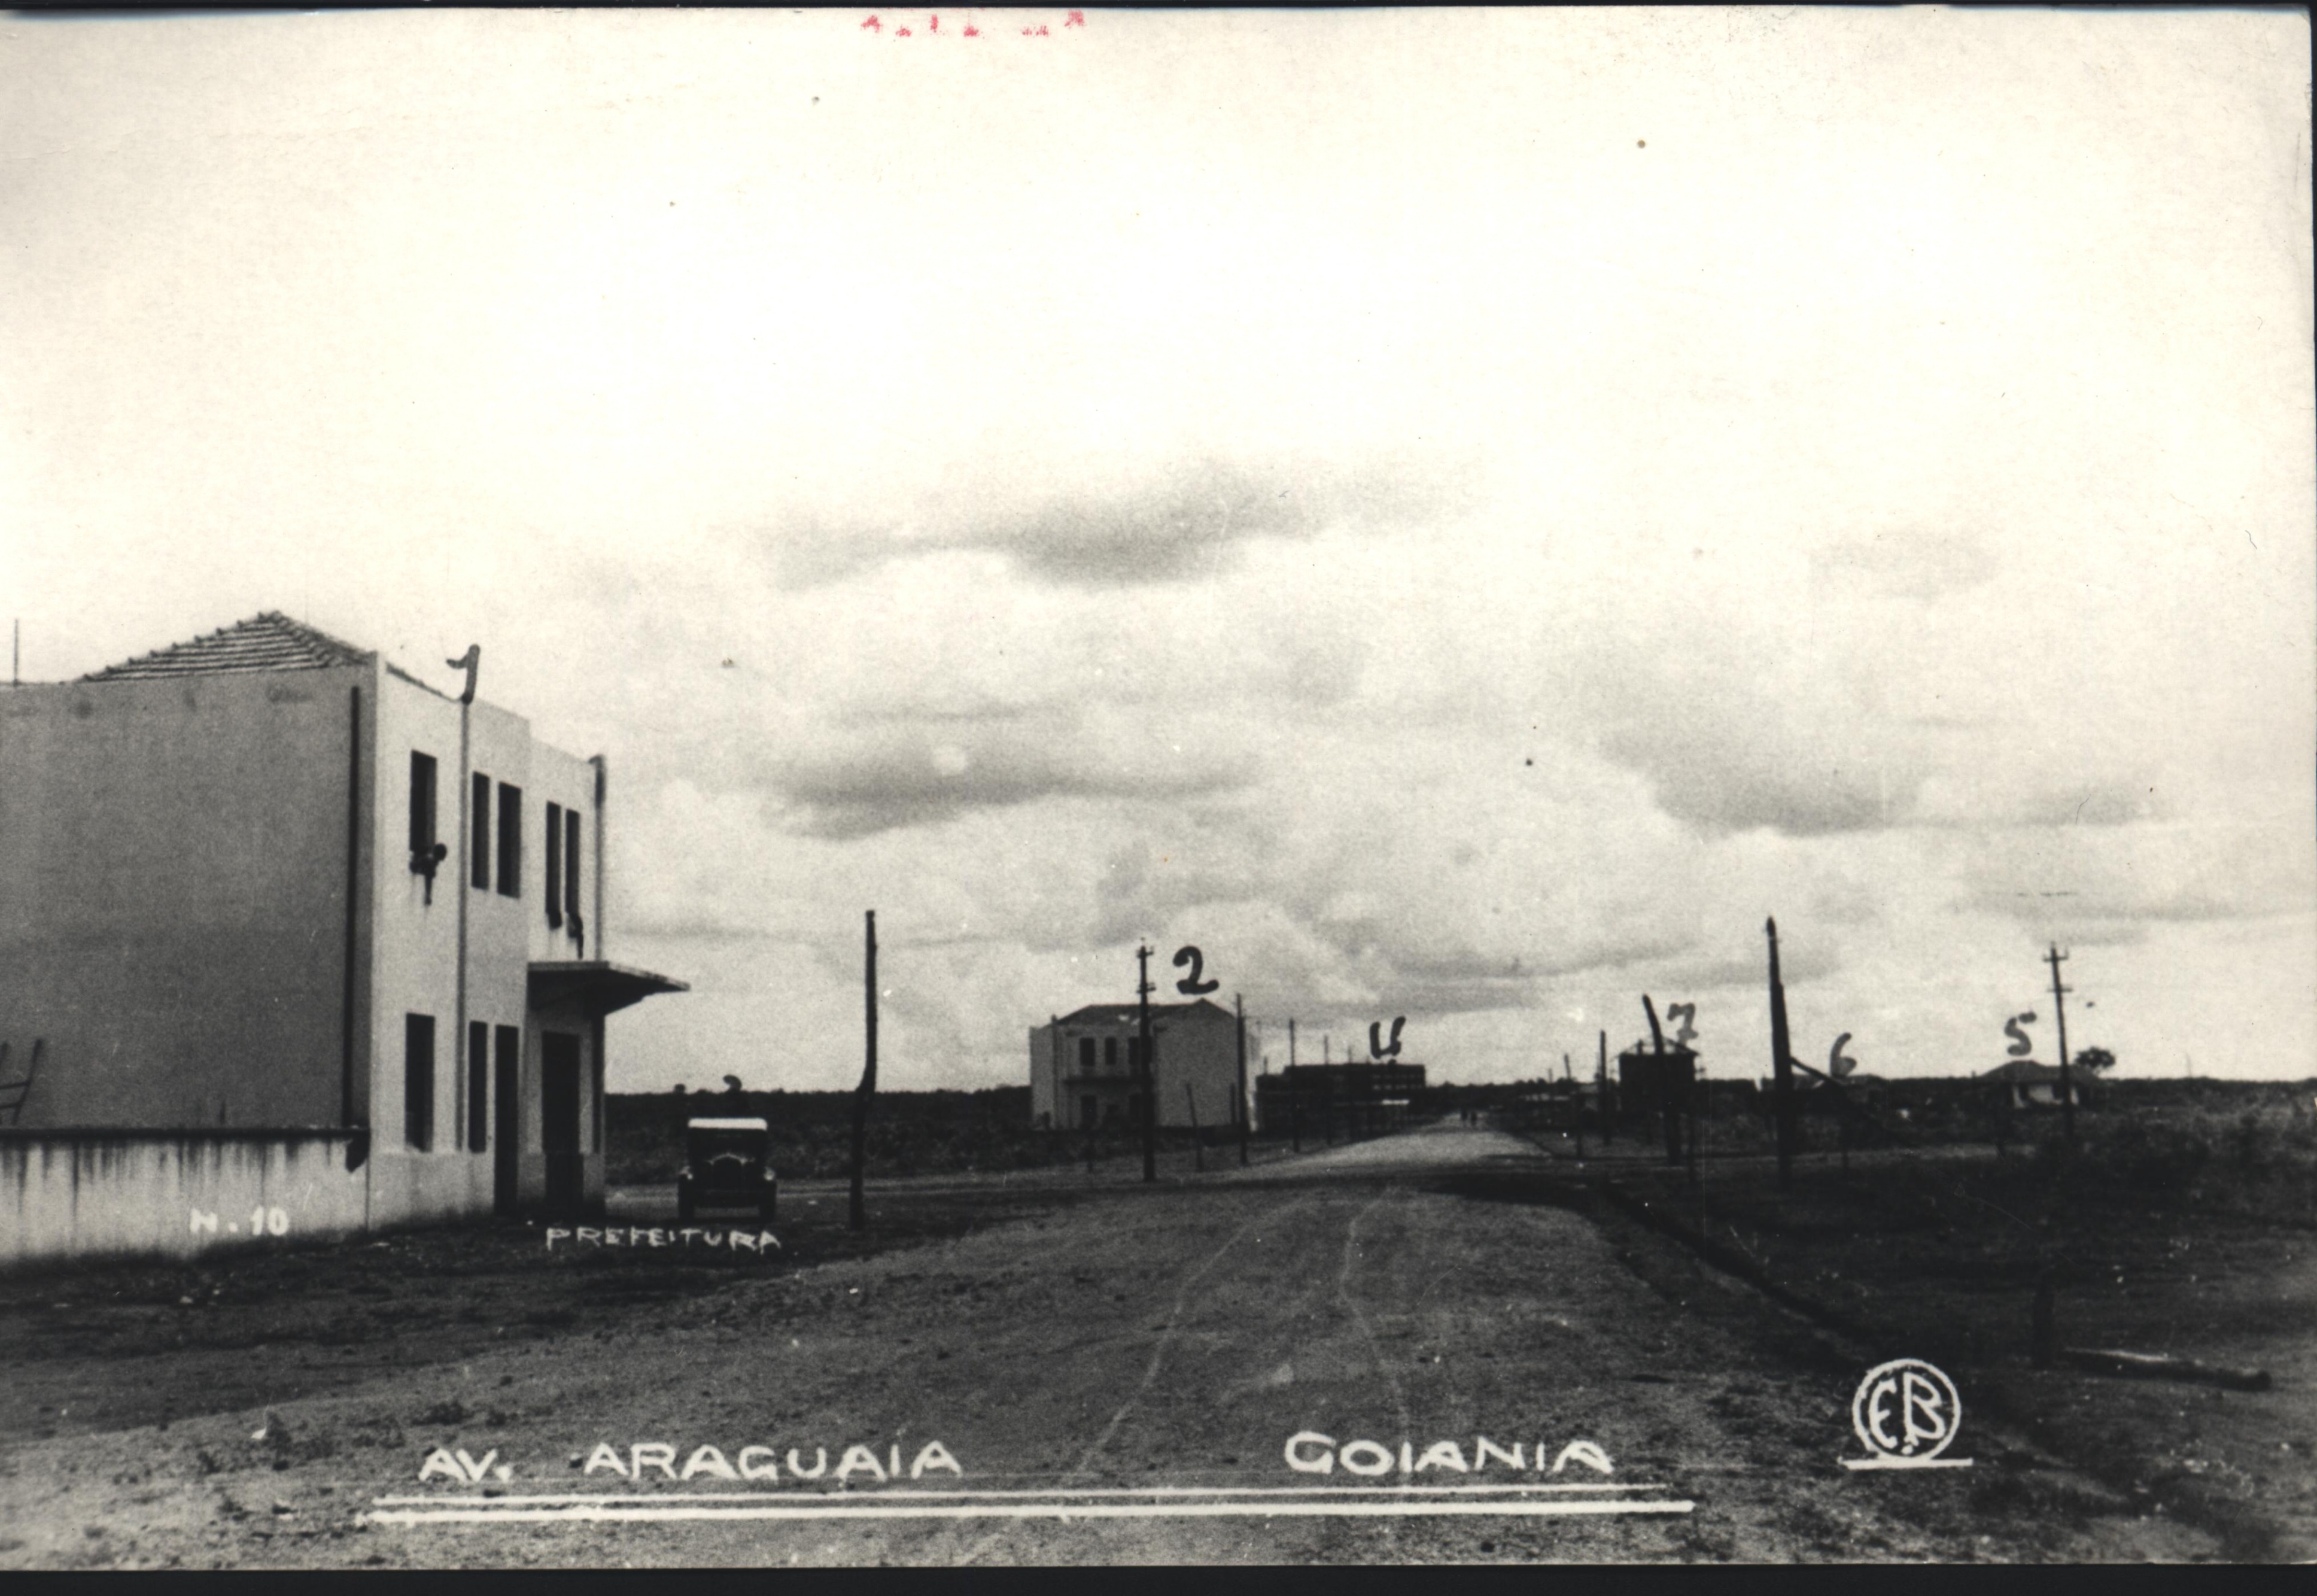 AVENIDA ARAGUAIA - Década de 40 (Arquivo Cedido pela Prefeitura de Goiânia).jpg